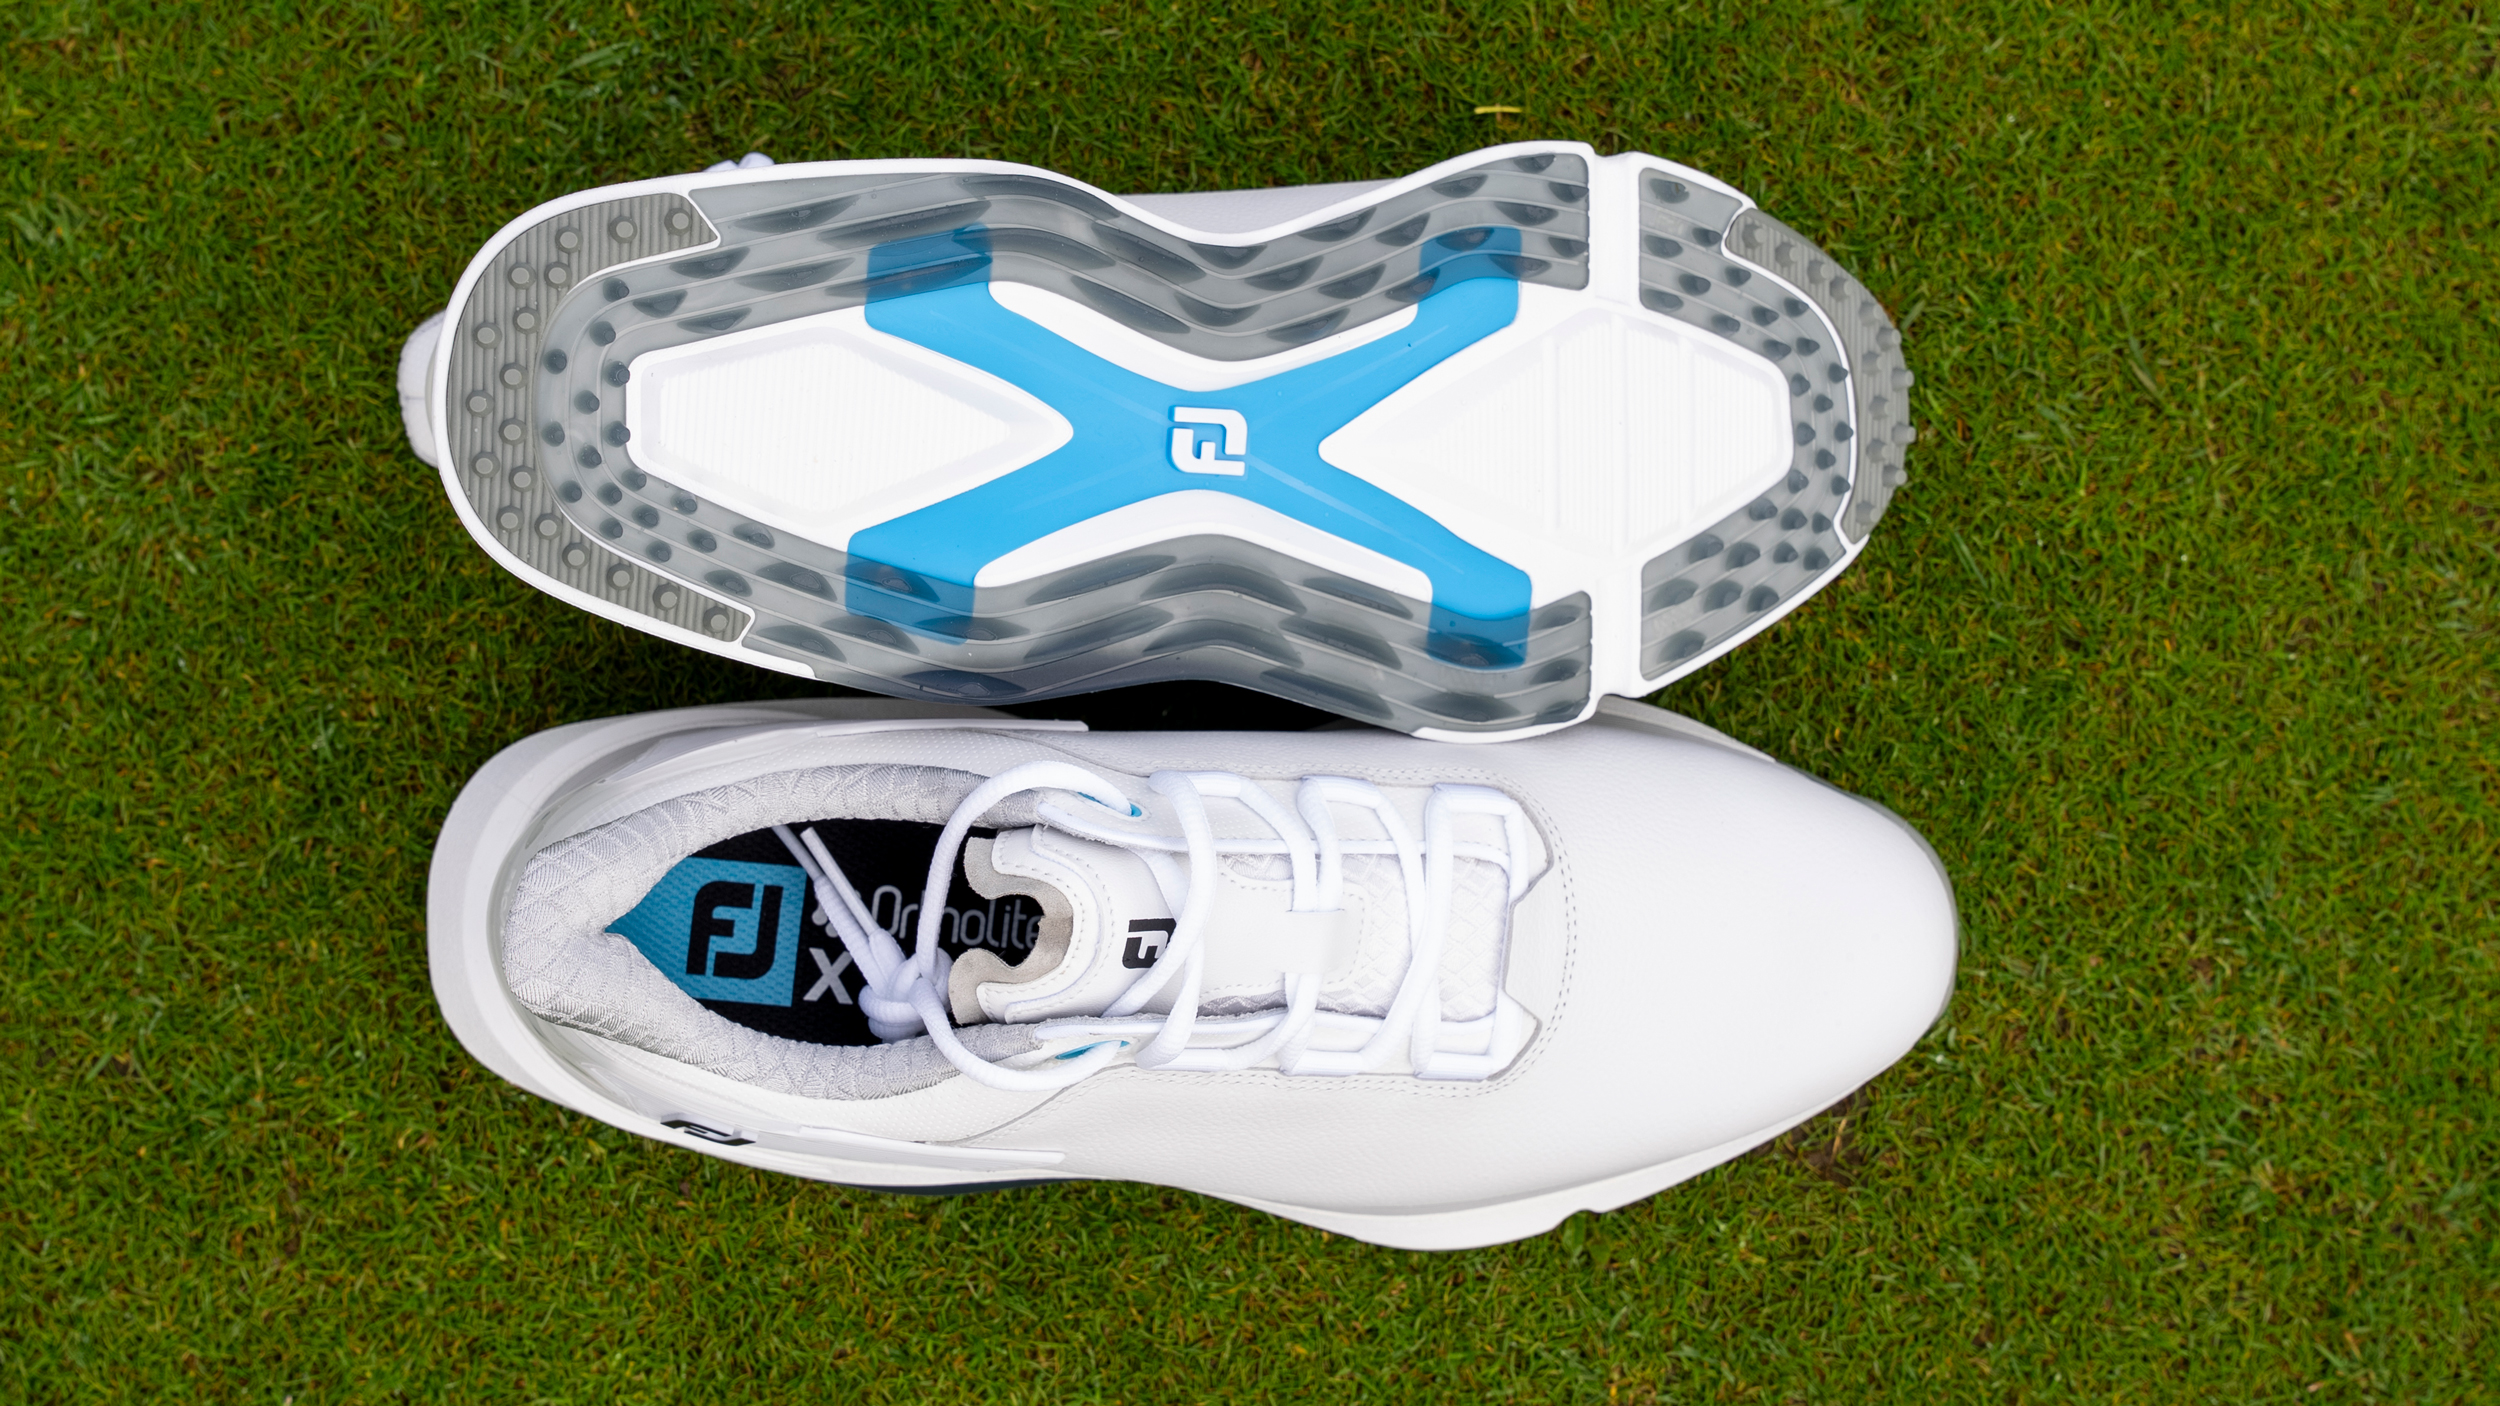 FootJoy Pro/SLX Golf Shoe sole view